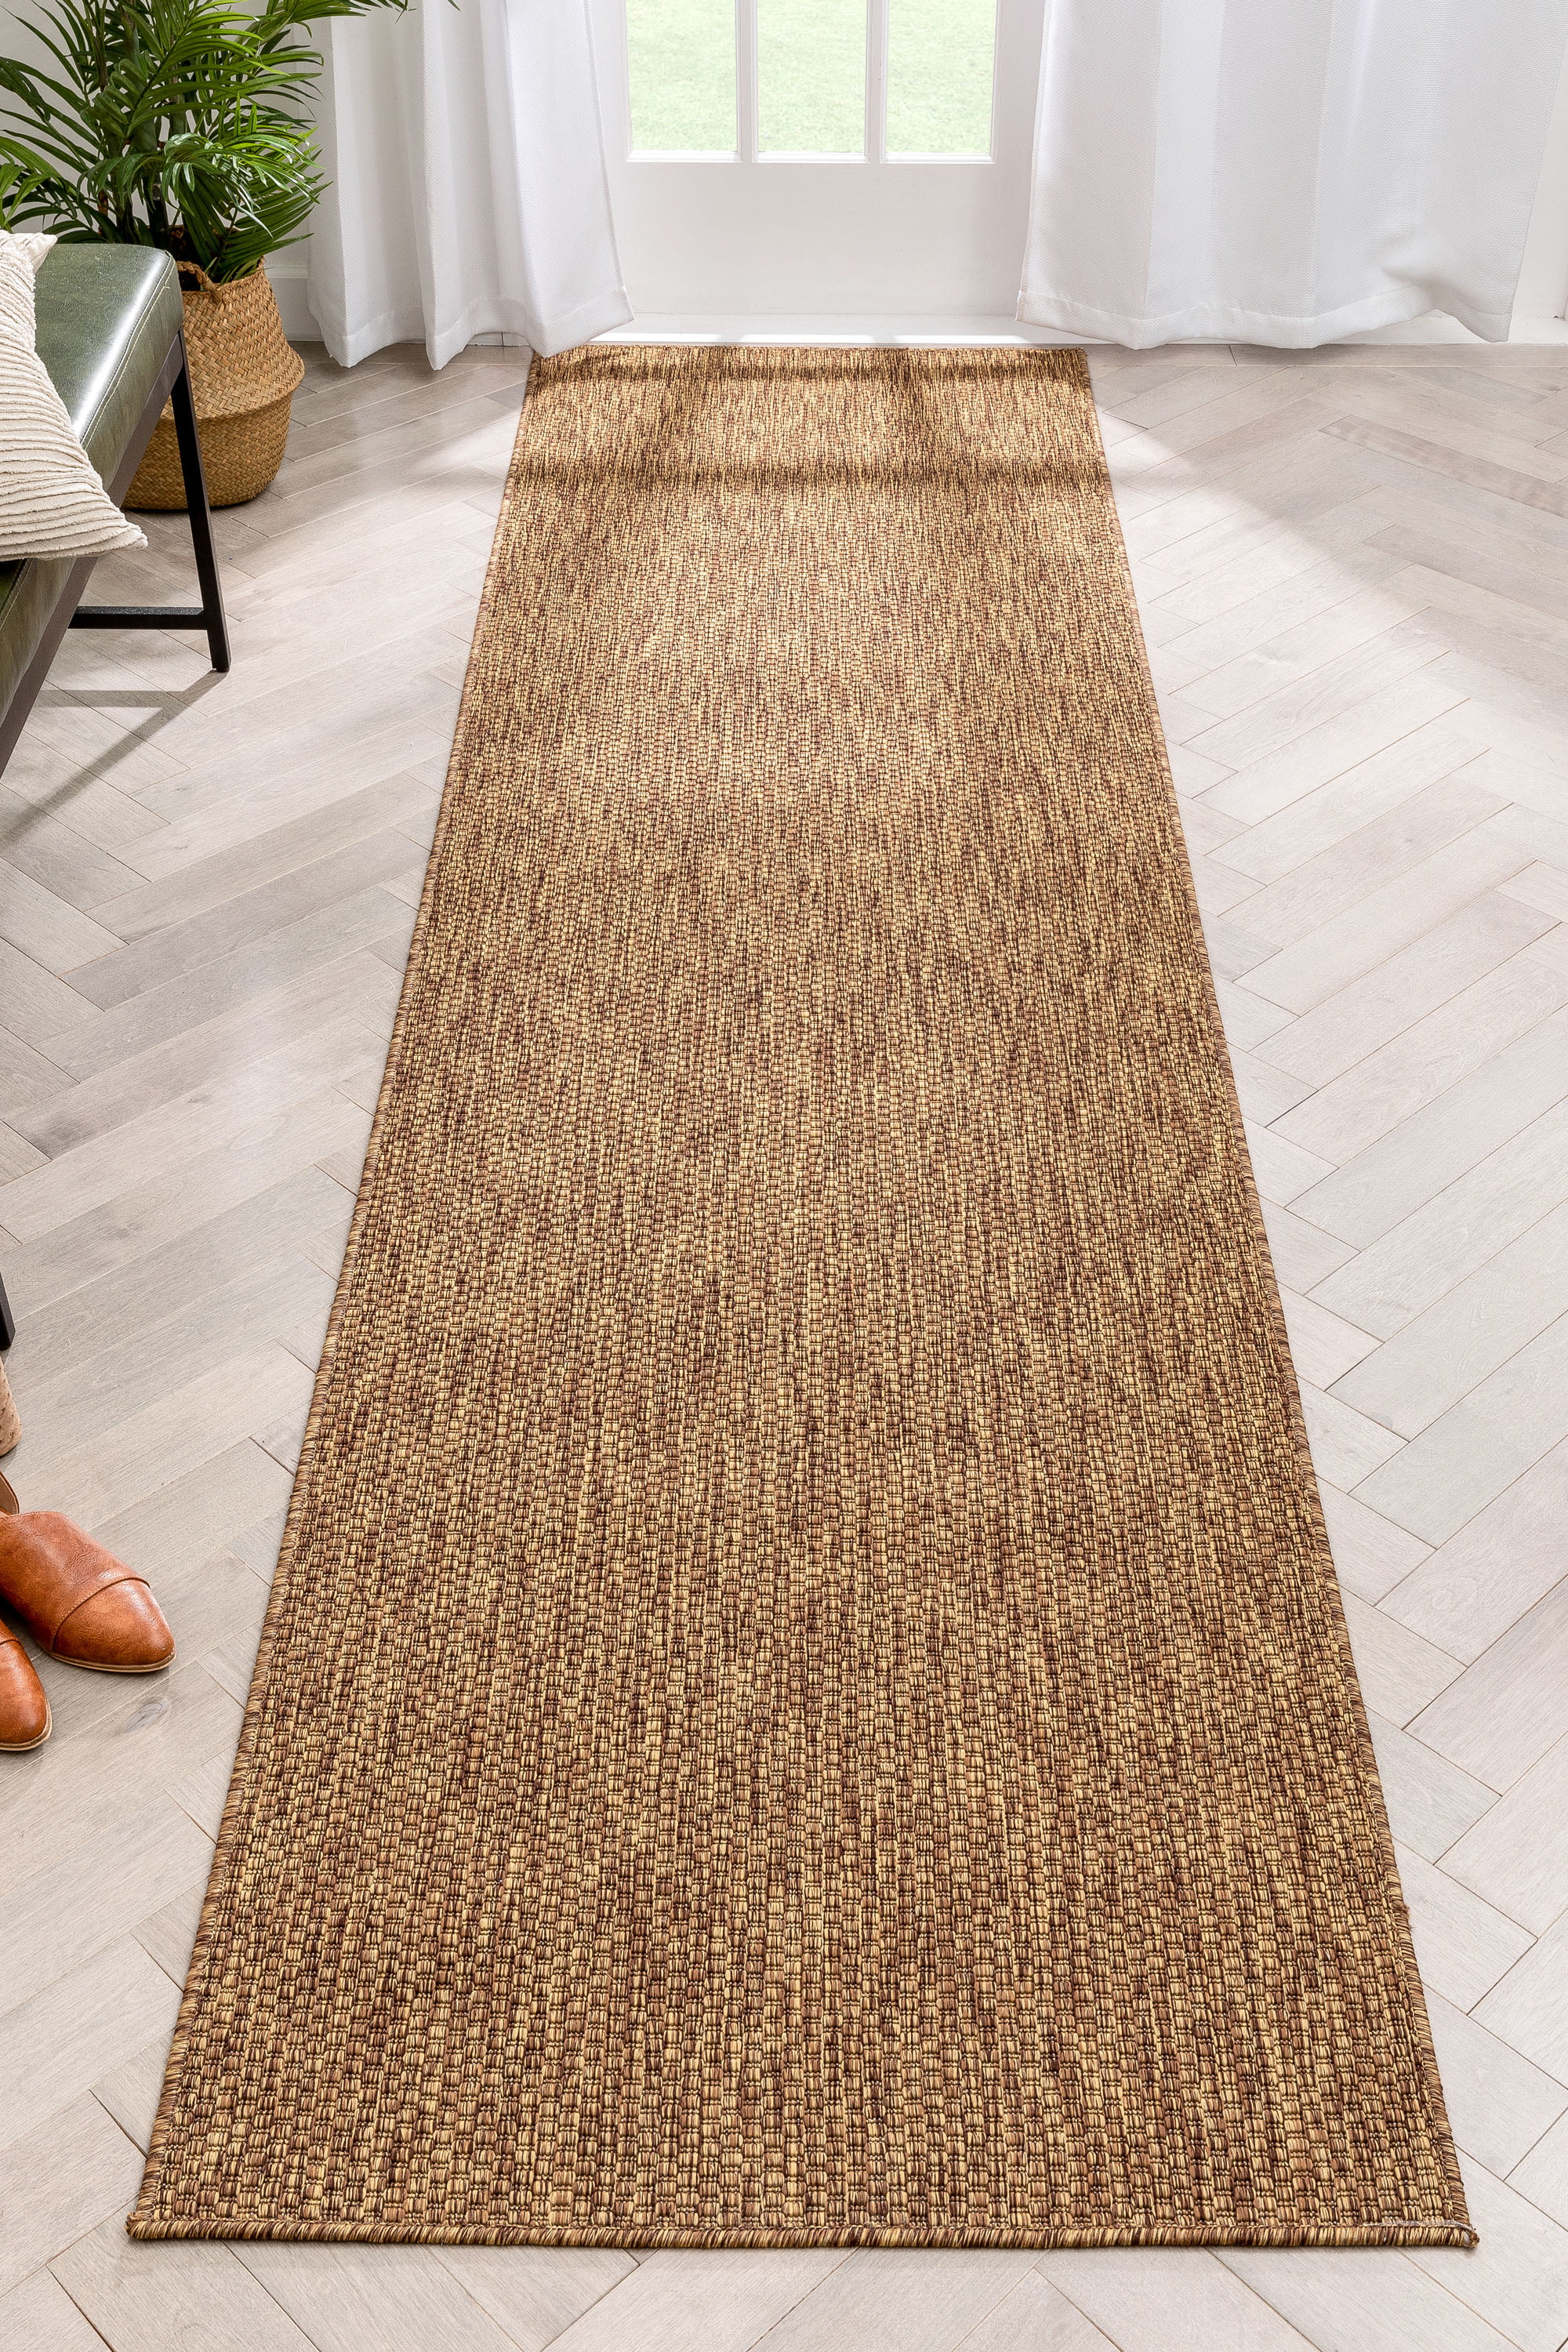 ALISA RUG PLAT Beige Flatweave Natural Jute Floor mat Carpet Organic FREE POST 